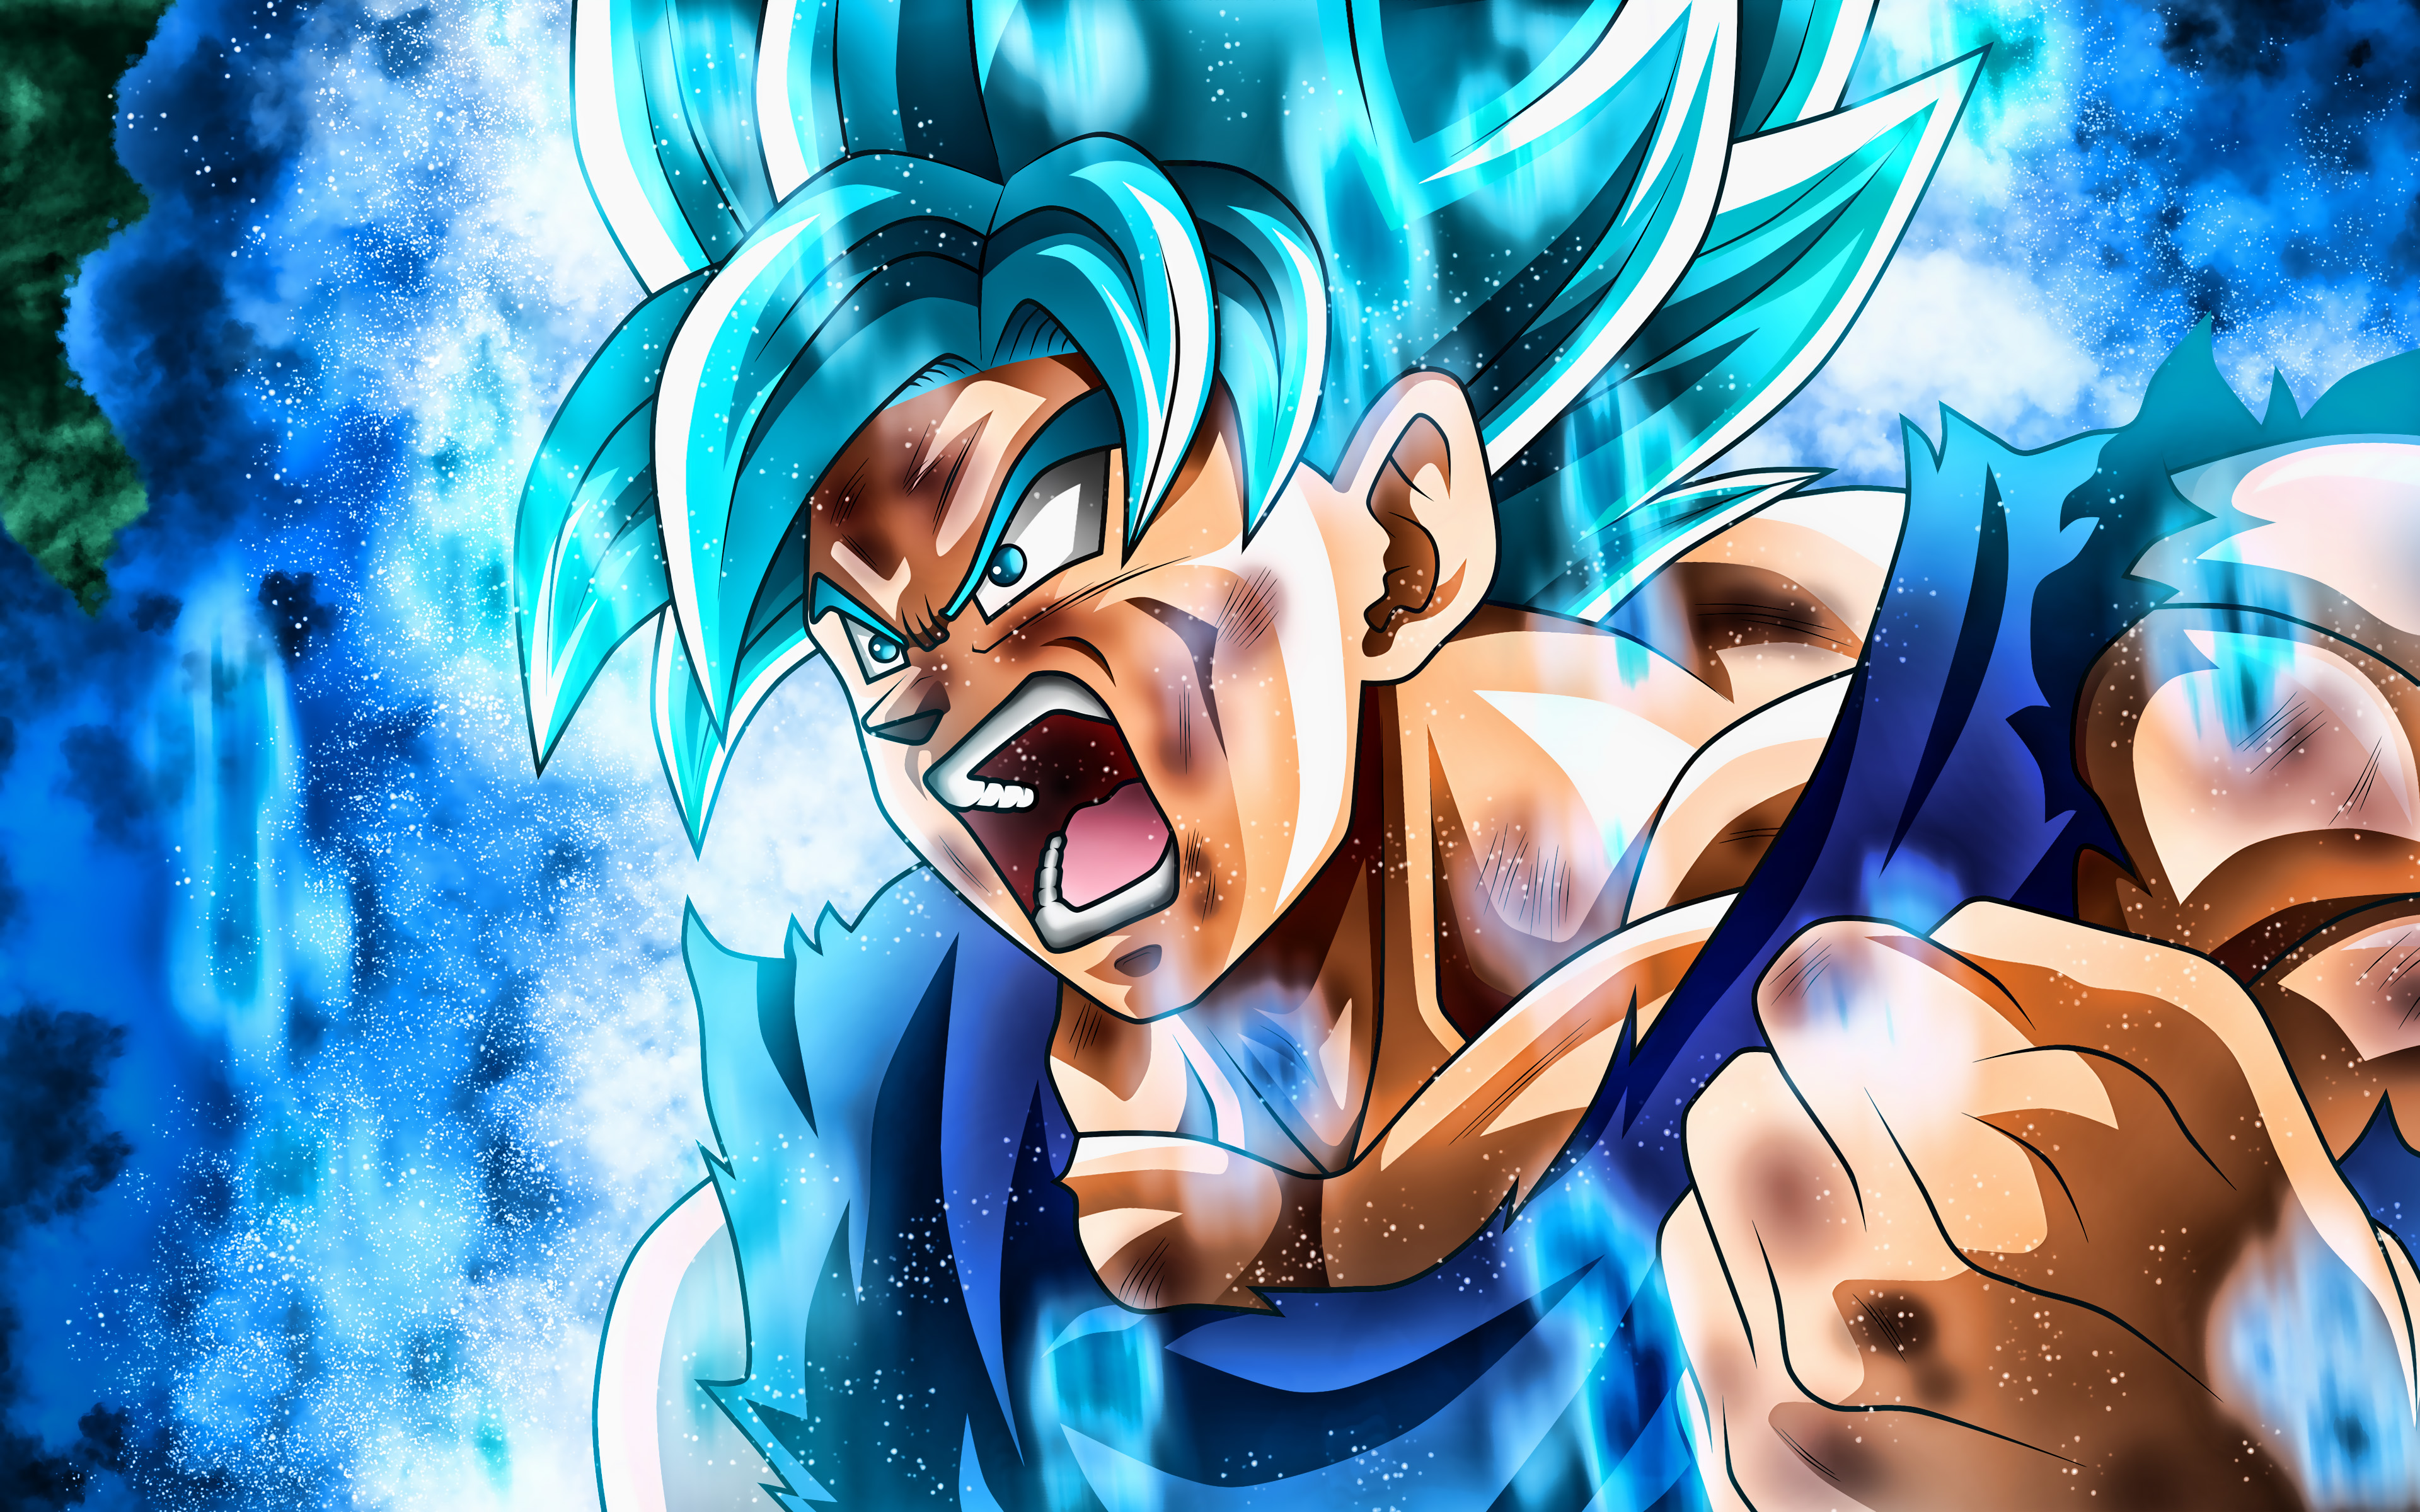 Son Goku Ssj Blue: Cùng chiêm ngưỡng hình ảnh của Goku trong tư thế Super Saiyan Blue - một trong những dạng biến hình mạnh nhất trong bộ truyện Viên Ngọc Rồng. Bắt đầu chỉ với việc cười mỉm, Goku có thể nâng cao sức mạnh và đẩy đối thủ vào tình thế bất lợi.